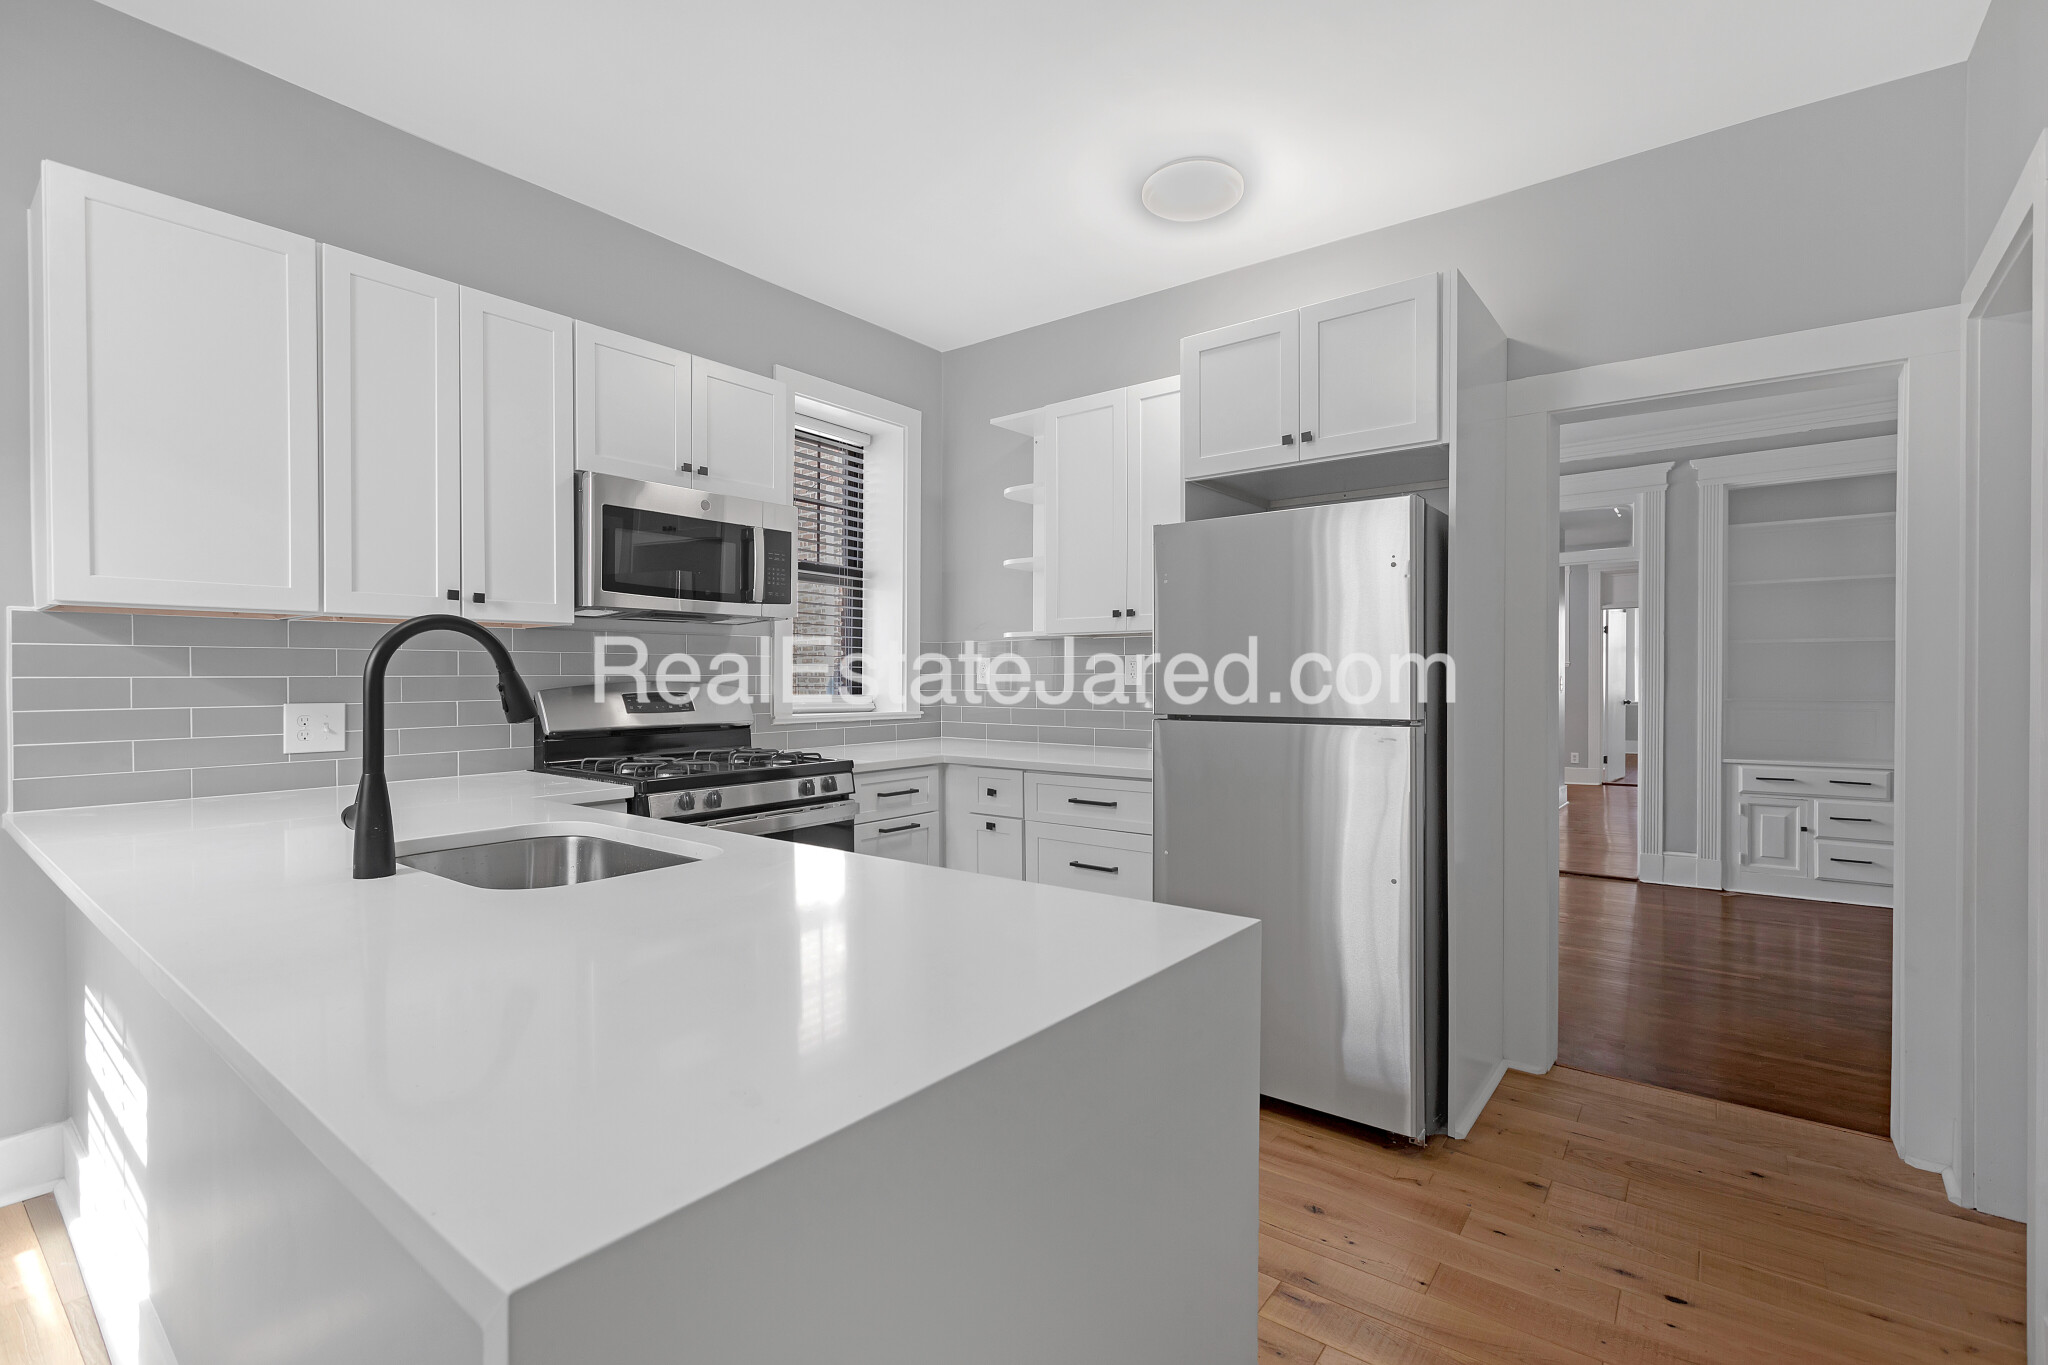 Photos of apartment on Allston St.,Boston MA 02134